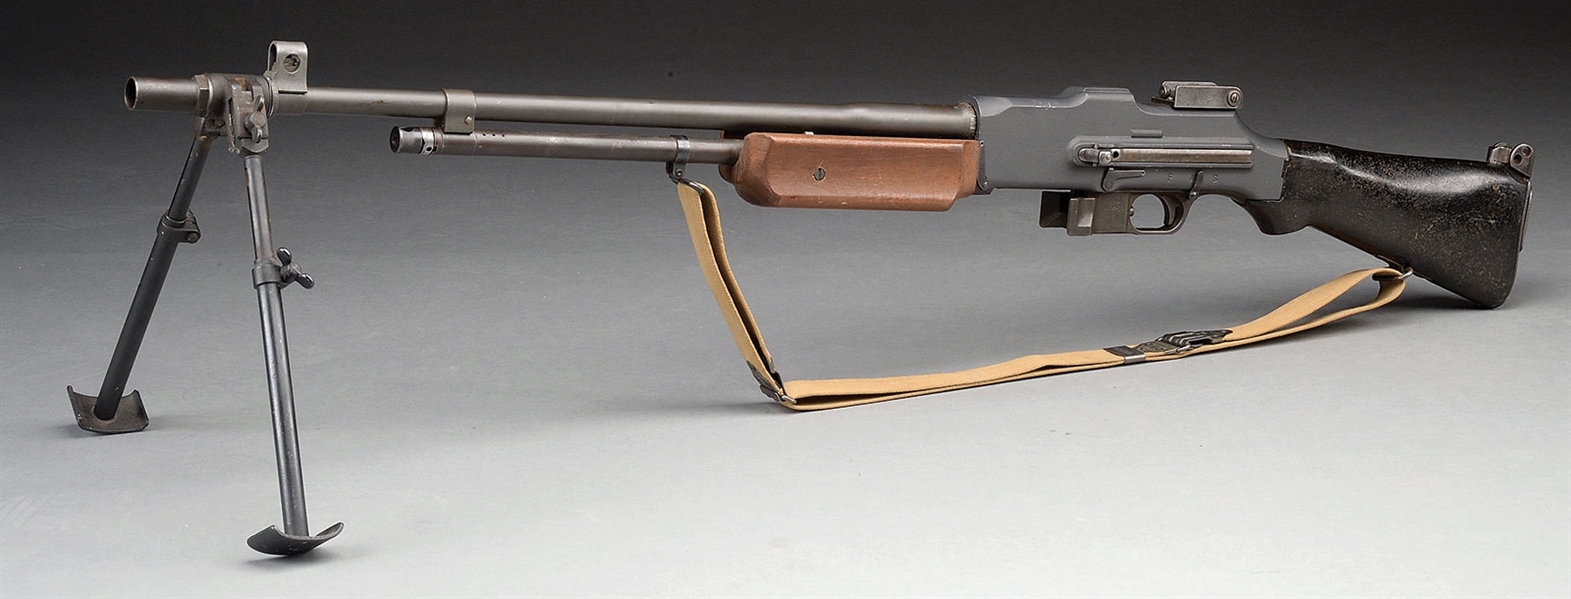 DUMMY 1918A2 BAR LIGHT MACHINE GUN MODEL.                                                                                                                                                               